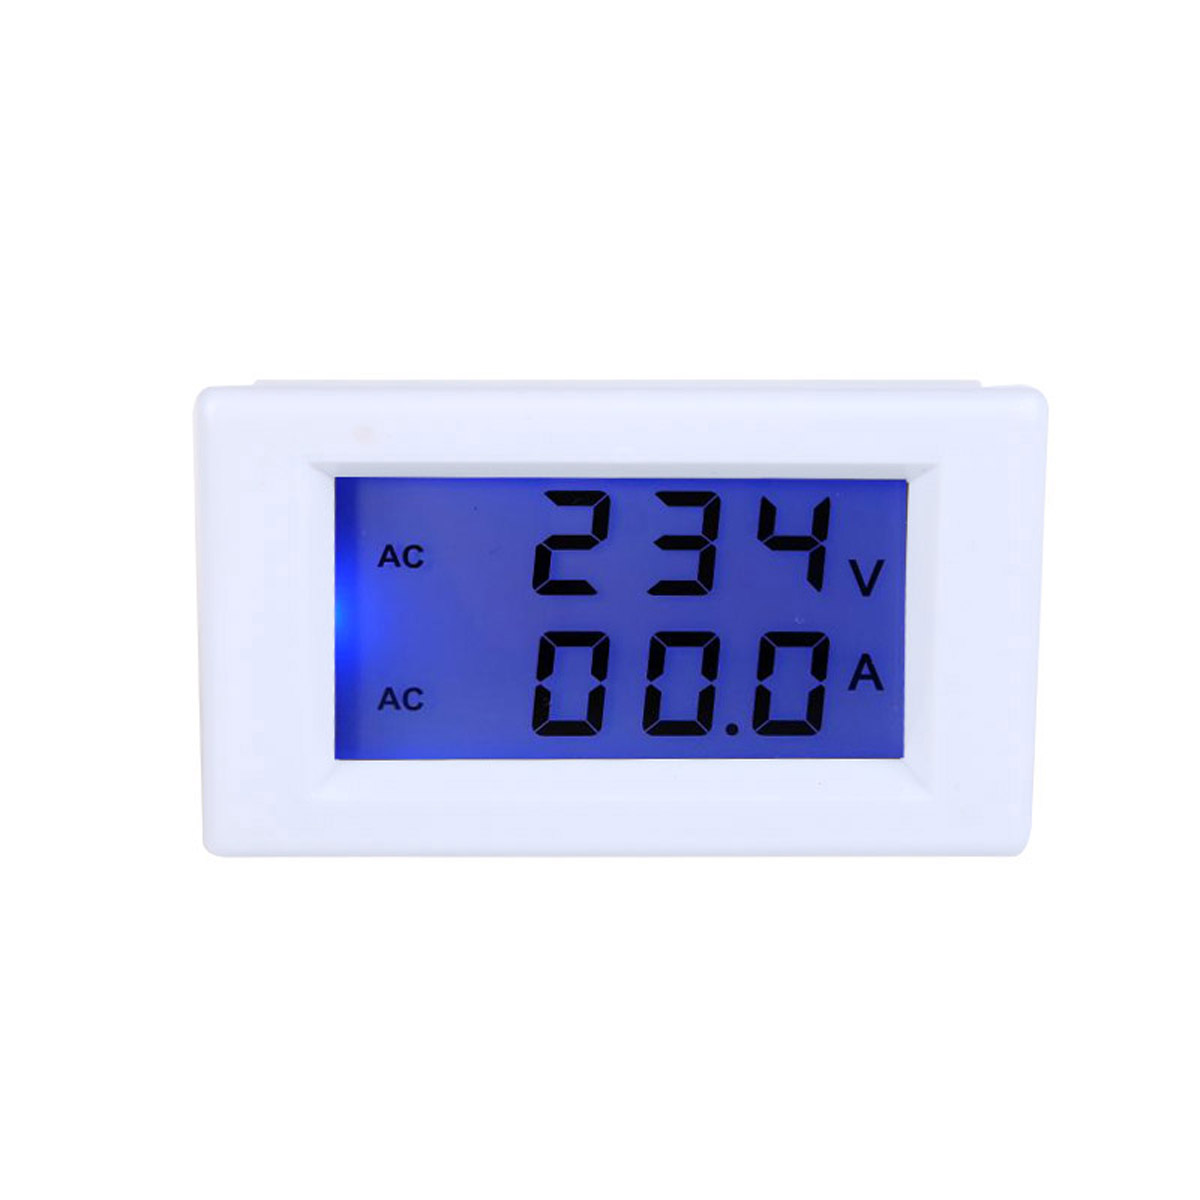 

D85-2041 LCD Display Digital AC100-300V 50A Ammeter Voltmeter Meter Tester Amp Panel Meter With Blue Blacklight